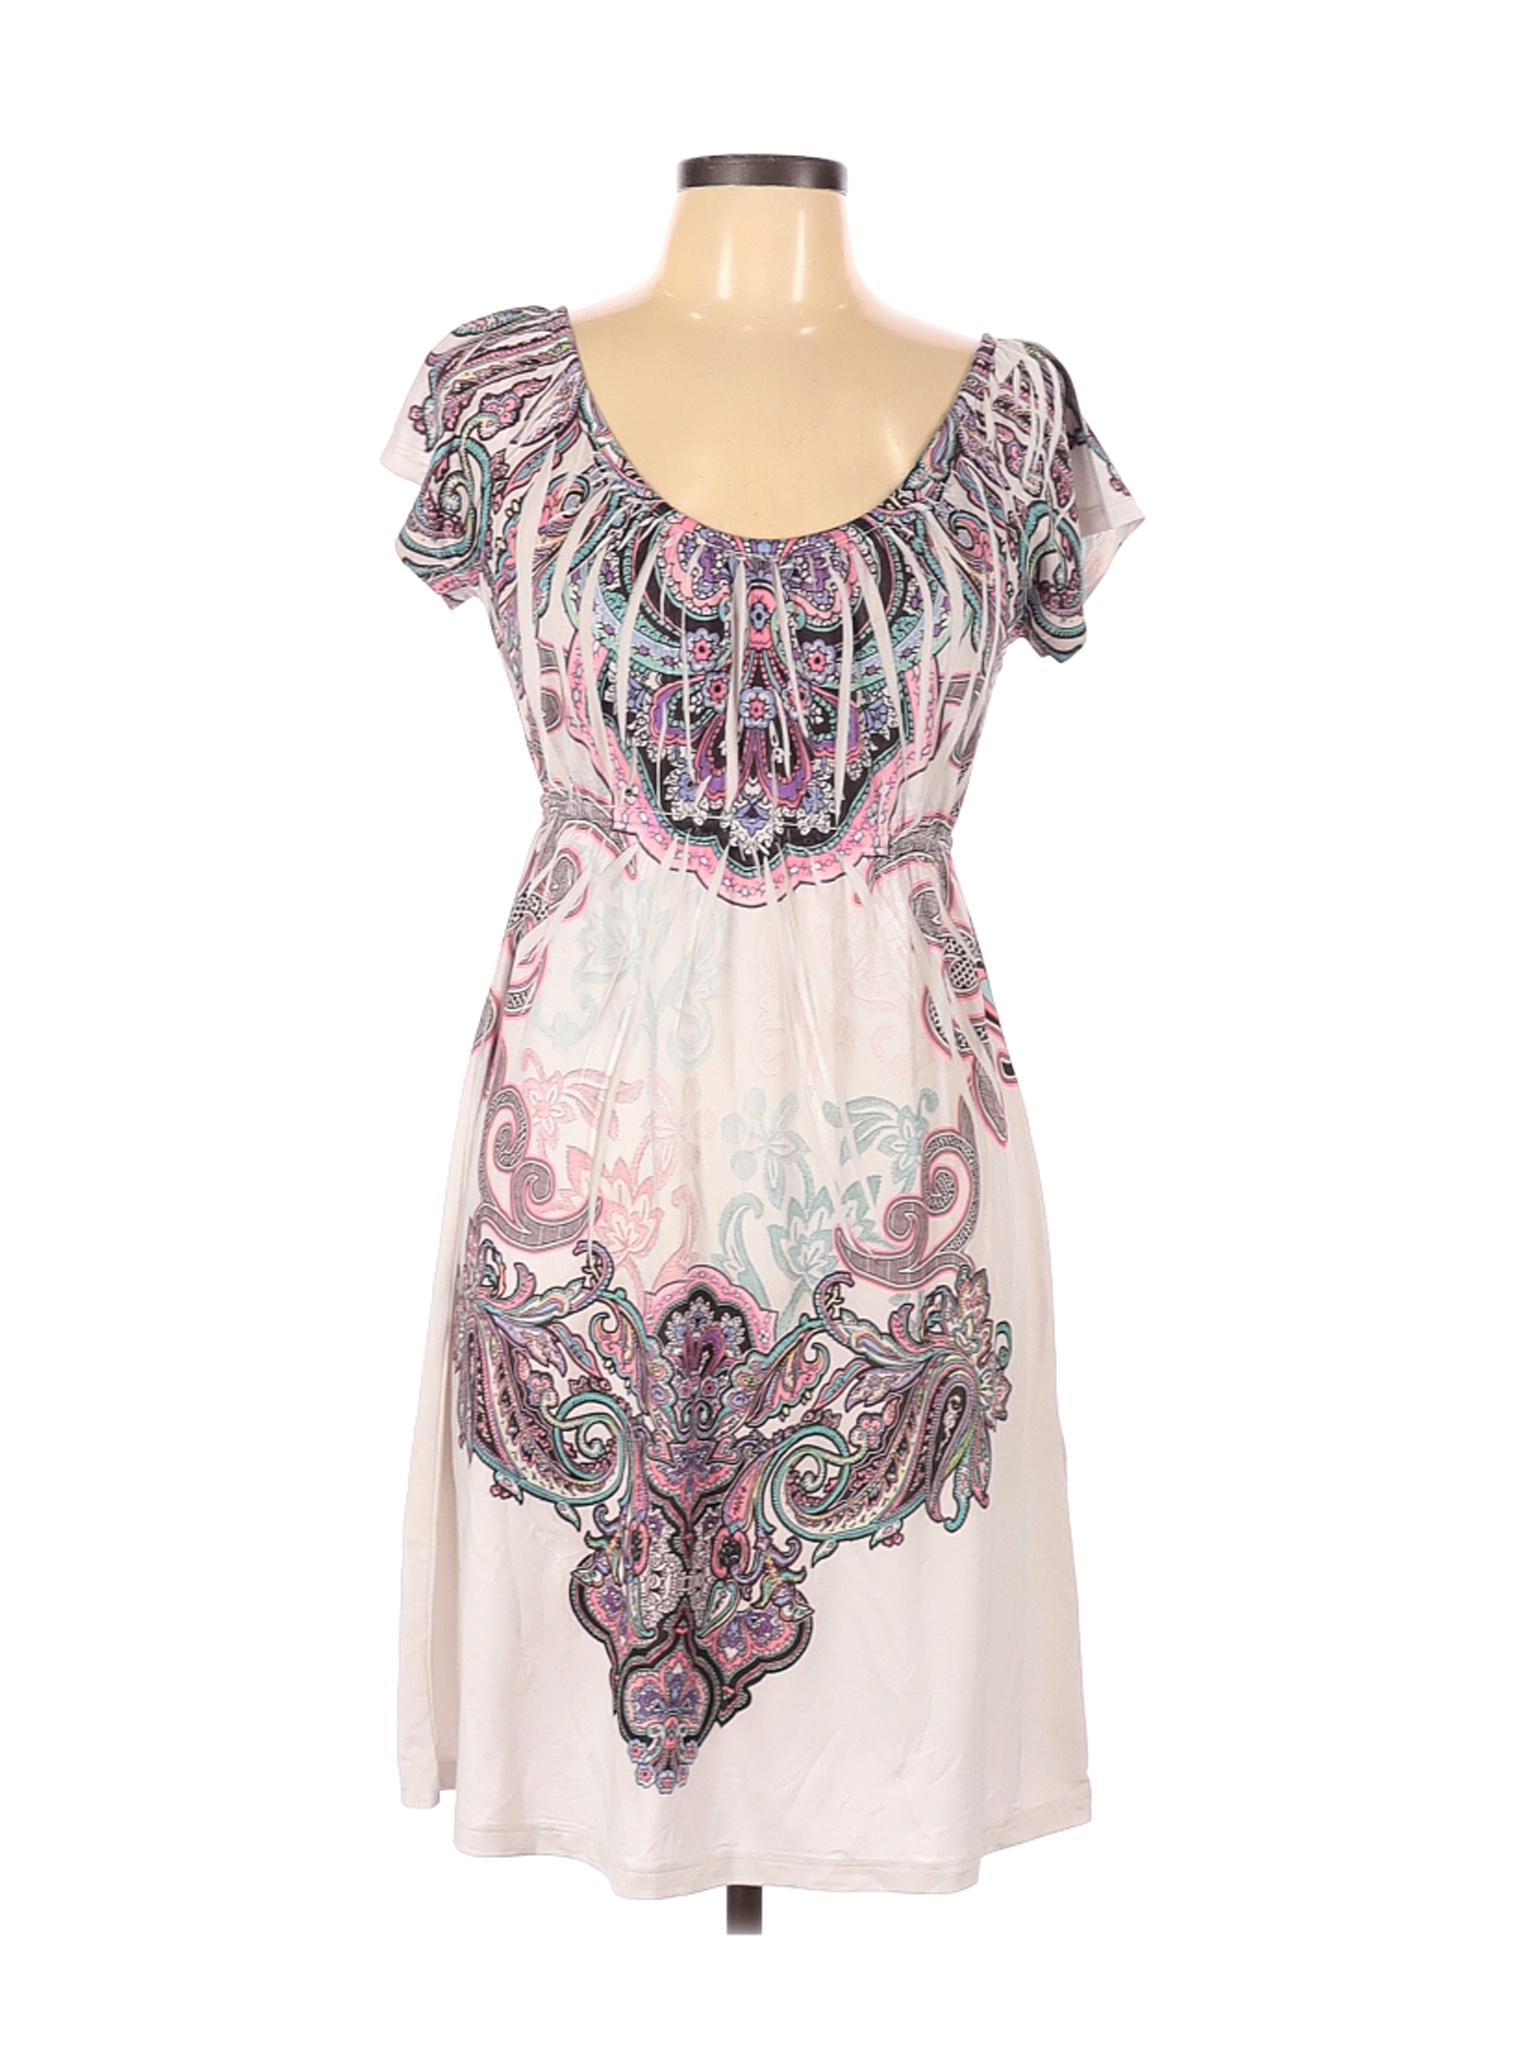 Kiara Women White Casual Dress L | eBay